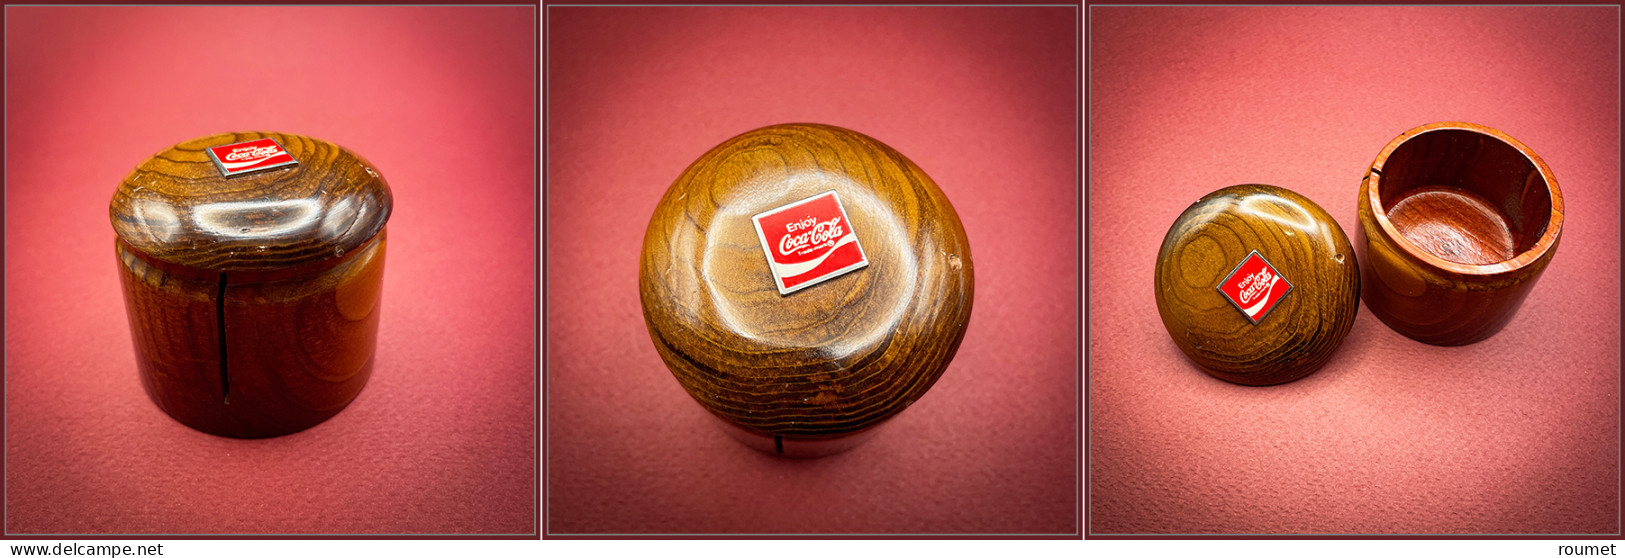 Distributeur De Roulettes. Modèle Publicitaire En Bois Verni, Sigle "Coca-Cola" Sur Couvercle, étiquette "California Red - Kisten Für Briefmarken